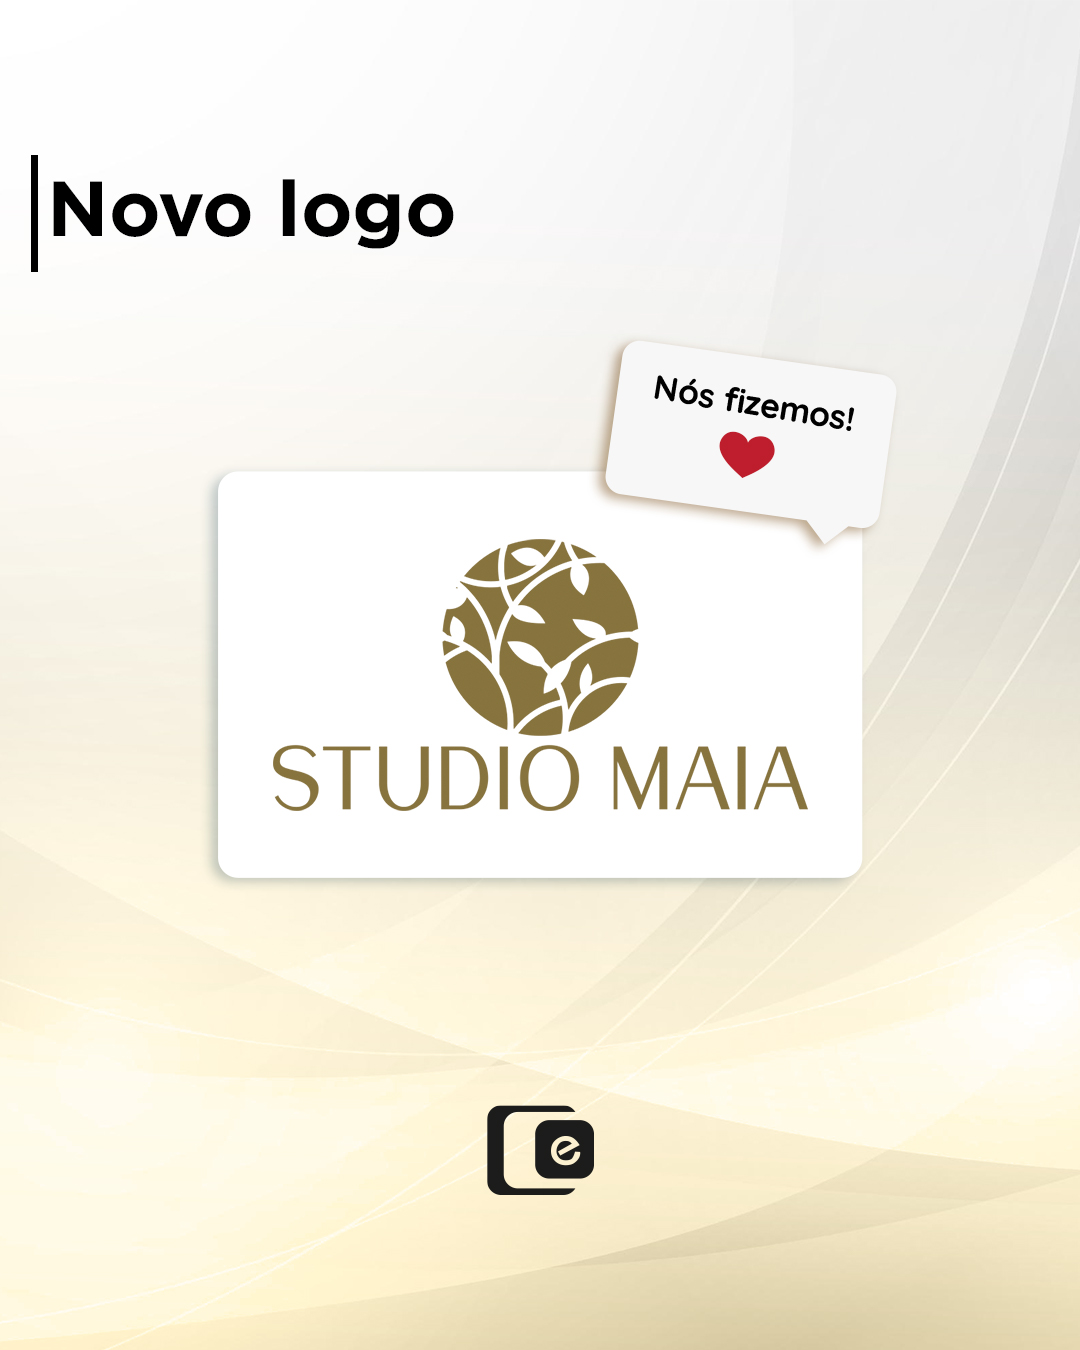 Nova logo do STUDIO MAIA!